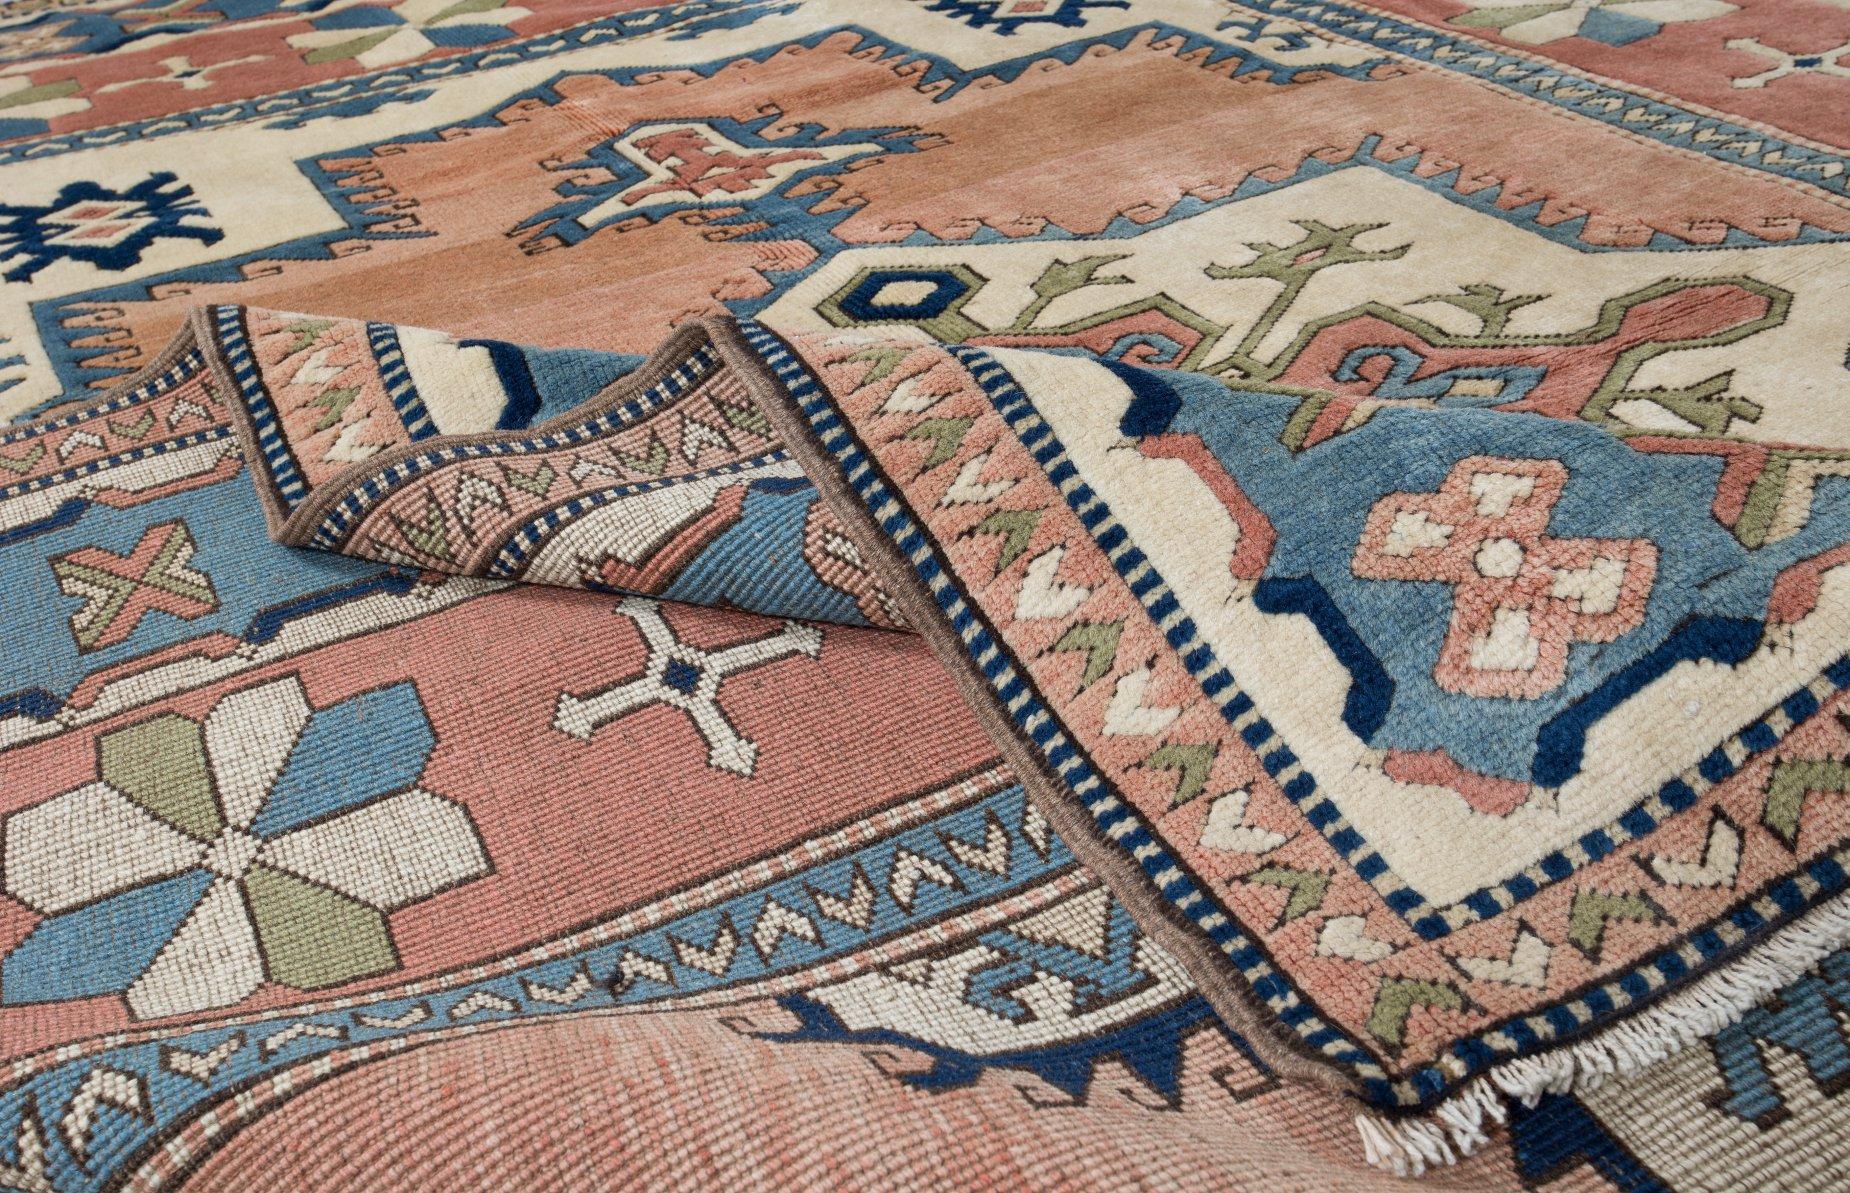 Tapis turc contemporain noué à la main.

Ce tapis moderne a un poil de laine moyen sur une base de laine.

Il est fabriqué à partir de mouton filé à la main de première qualité et de teintures naturelles, c'est-à-dire de teintures non chimiques à